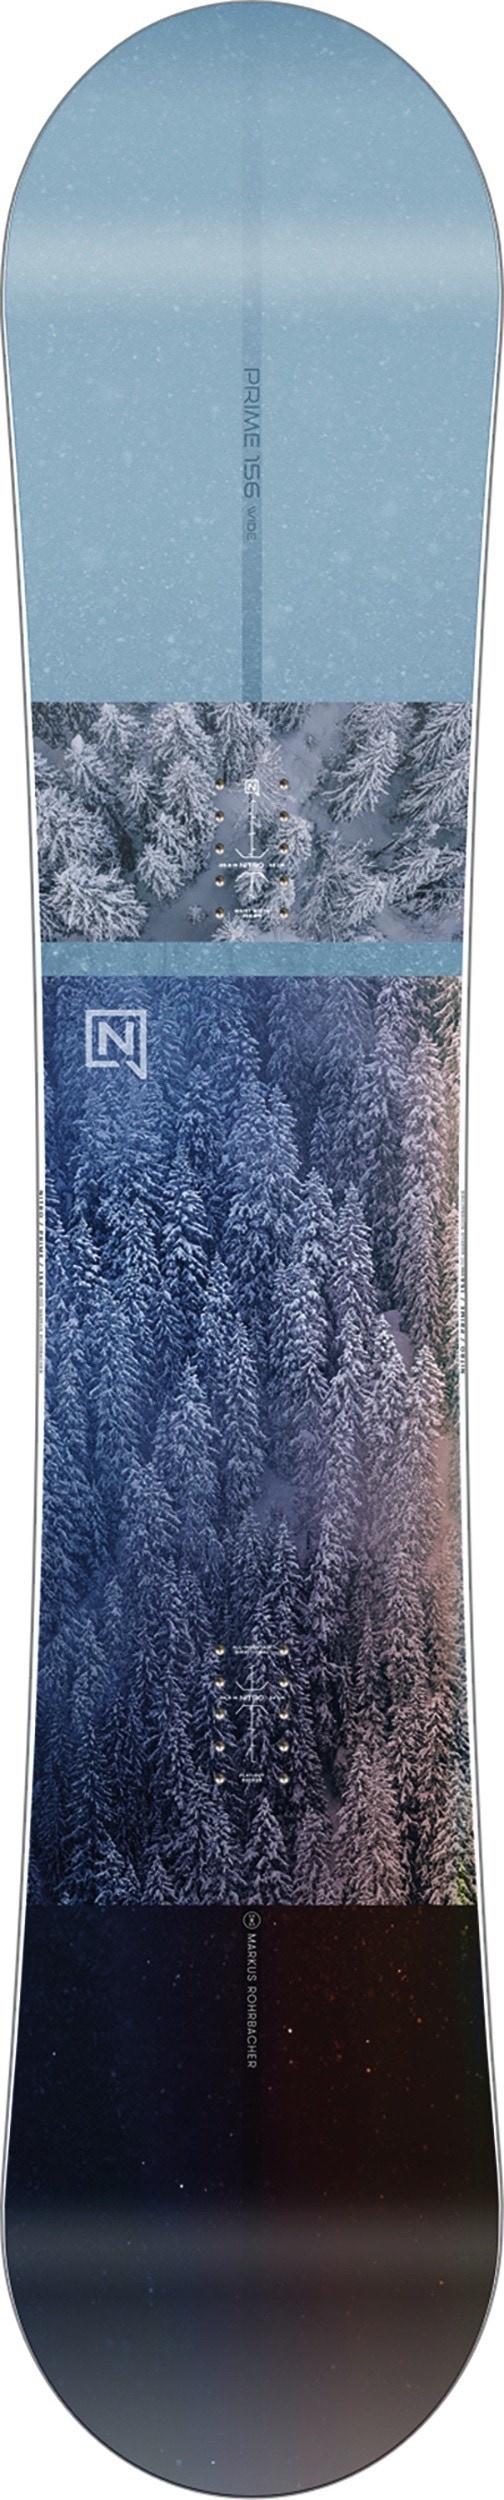 Nitro Prime view wide Snowboard 24 leicht hochwertig, Länge in cm: 165